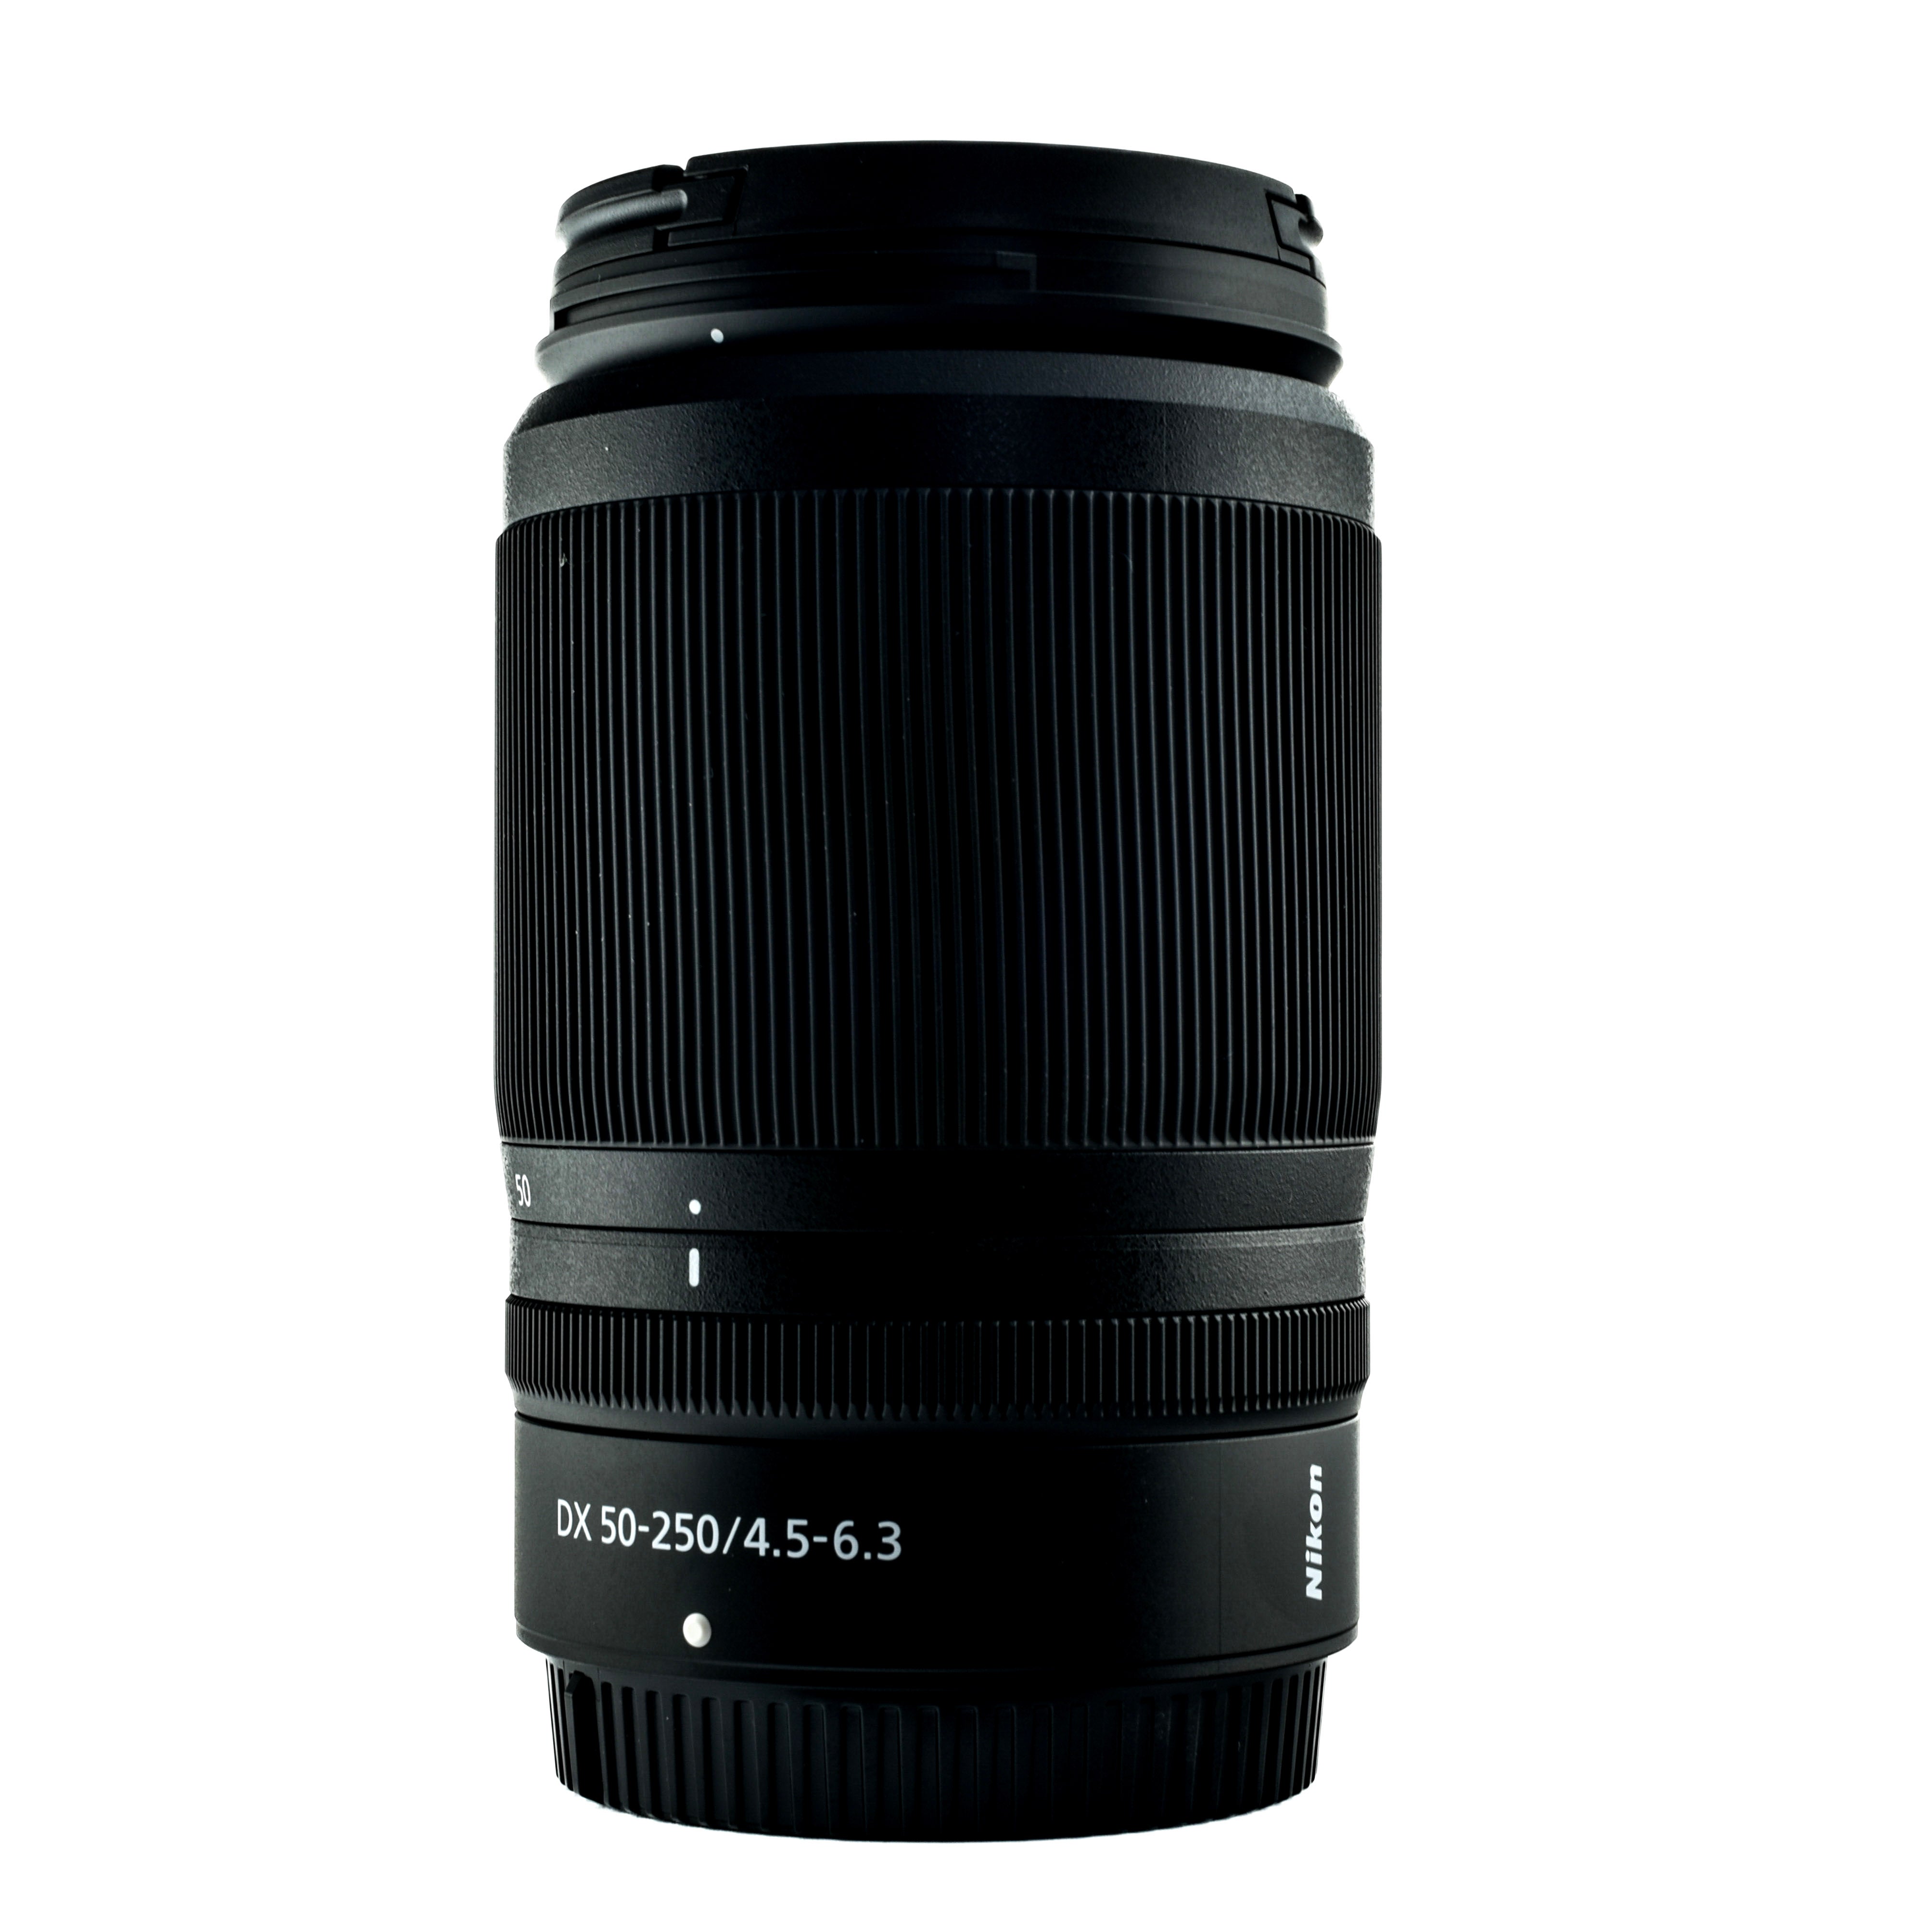 Nikkor Z DX 50-250mm f 4.5-6.3 VR lens